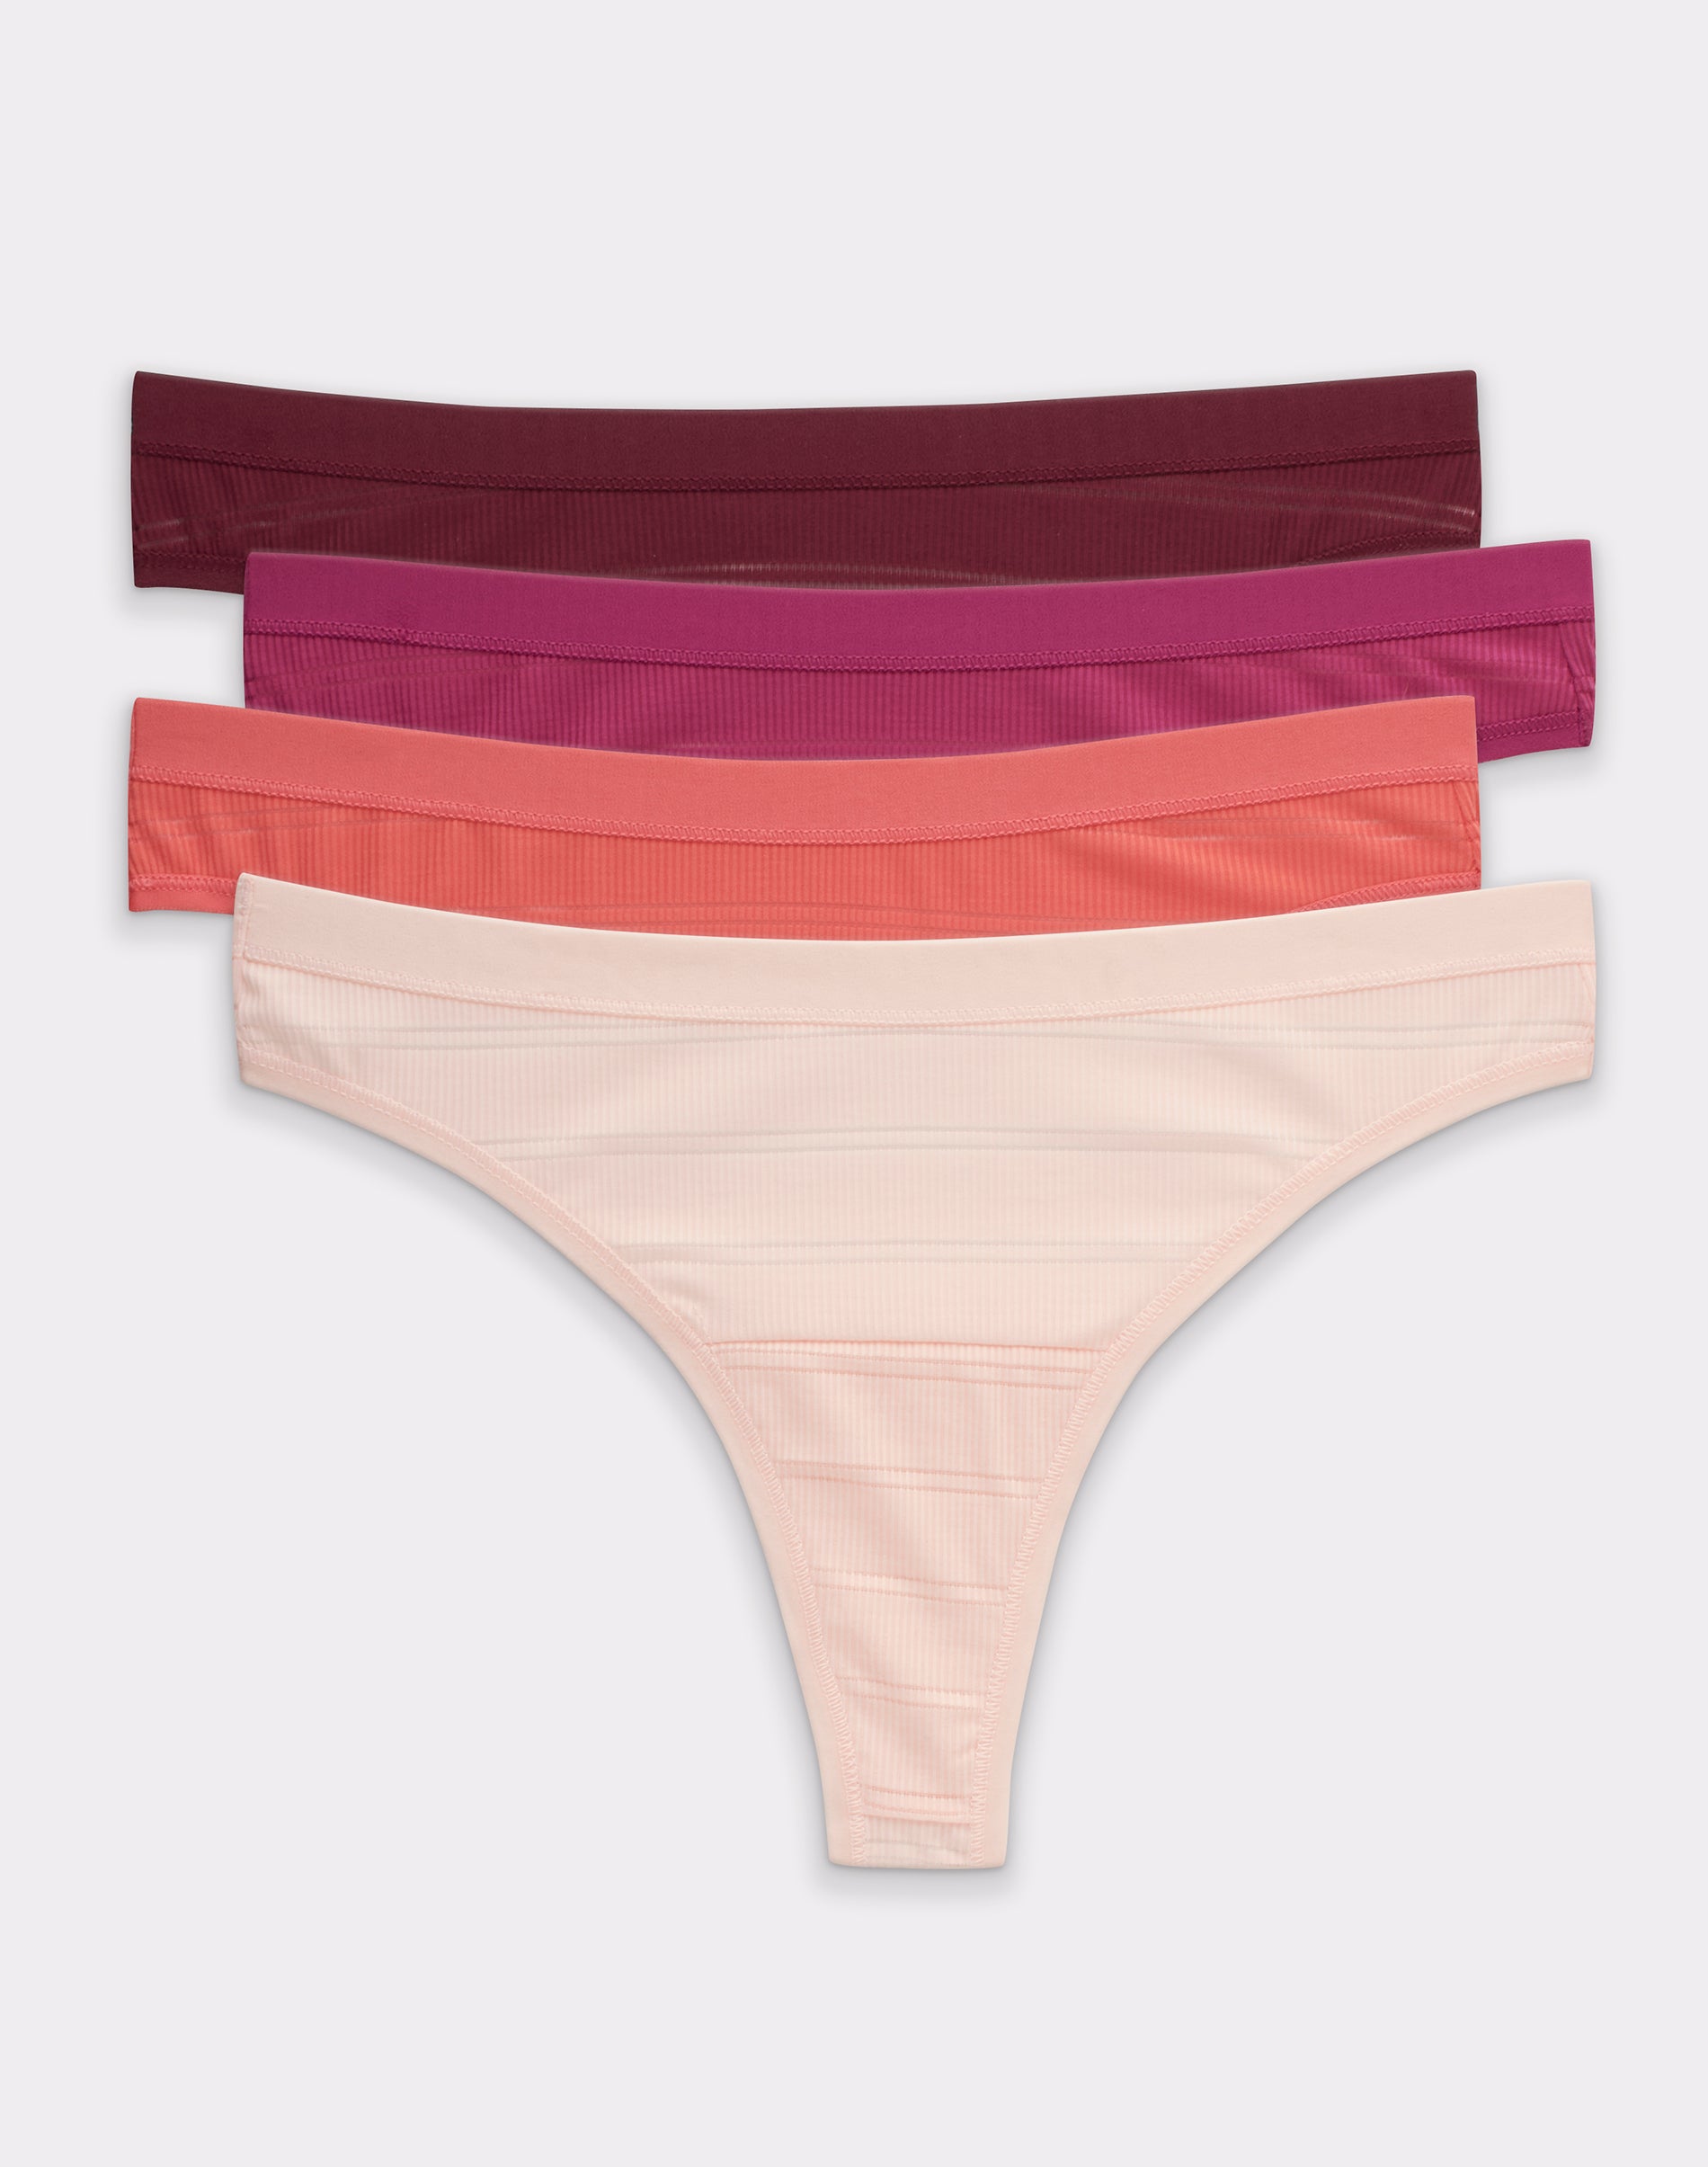 HANES Women's Ultimate Cotton Comfort Briefs 4 Pack Panties